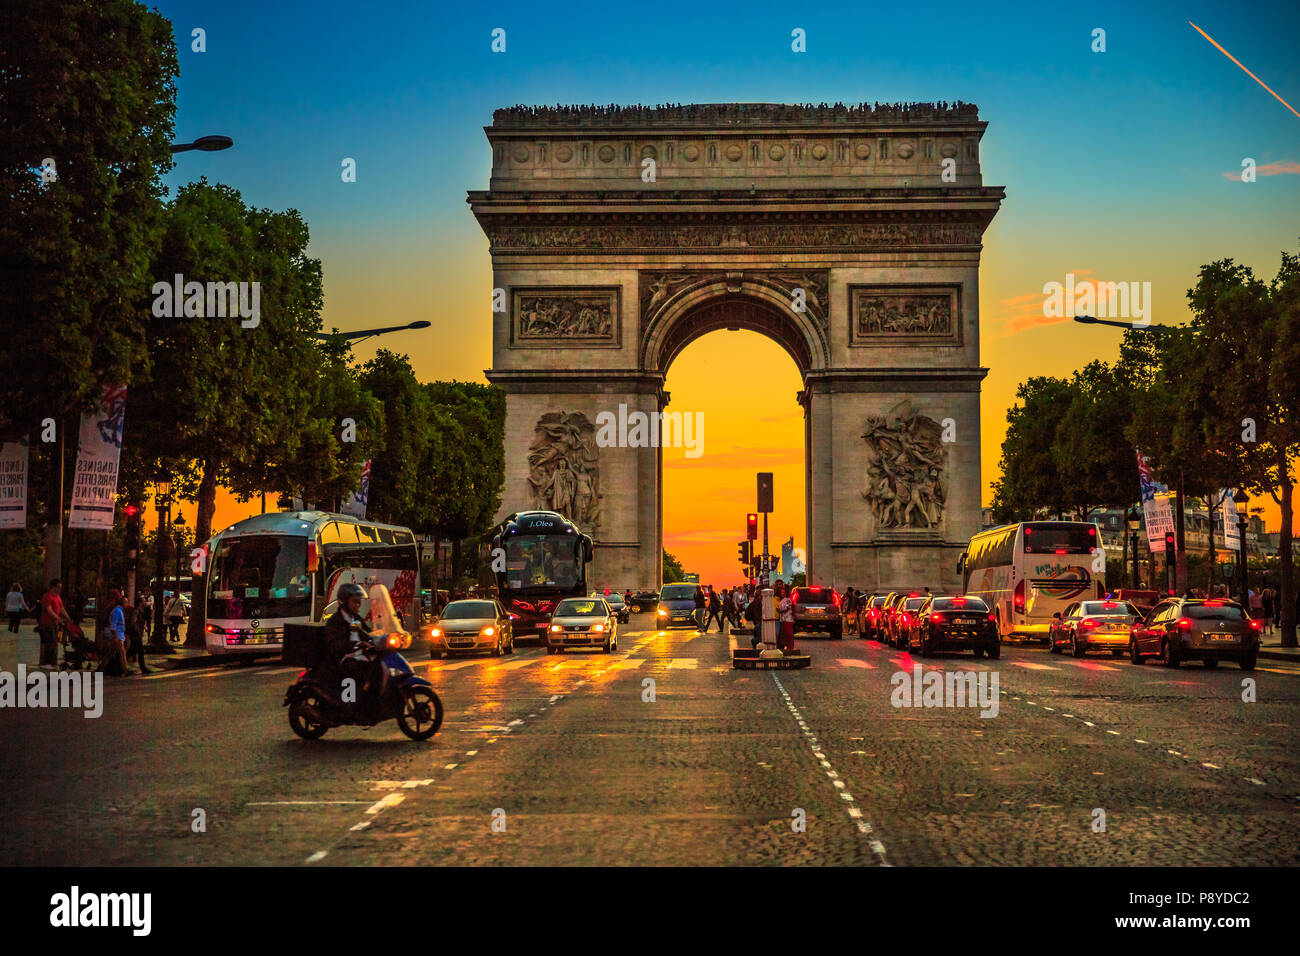 Parigi, Francia - luglio 2, 2017: square a Champs Elysees street e il centro di Place Charles de Gaulle con arco di trionfo al crepuscolo con il traffico street. Arc de Triomphe al blue ora a Parigi. Foto Stock